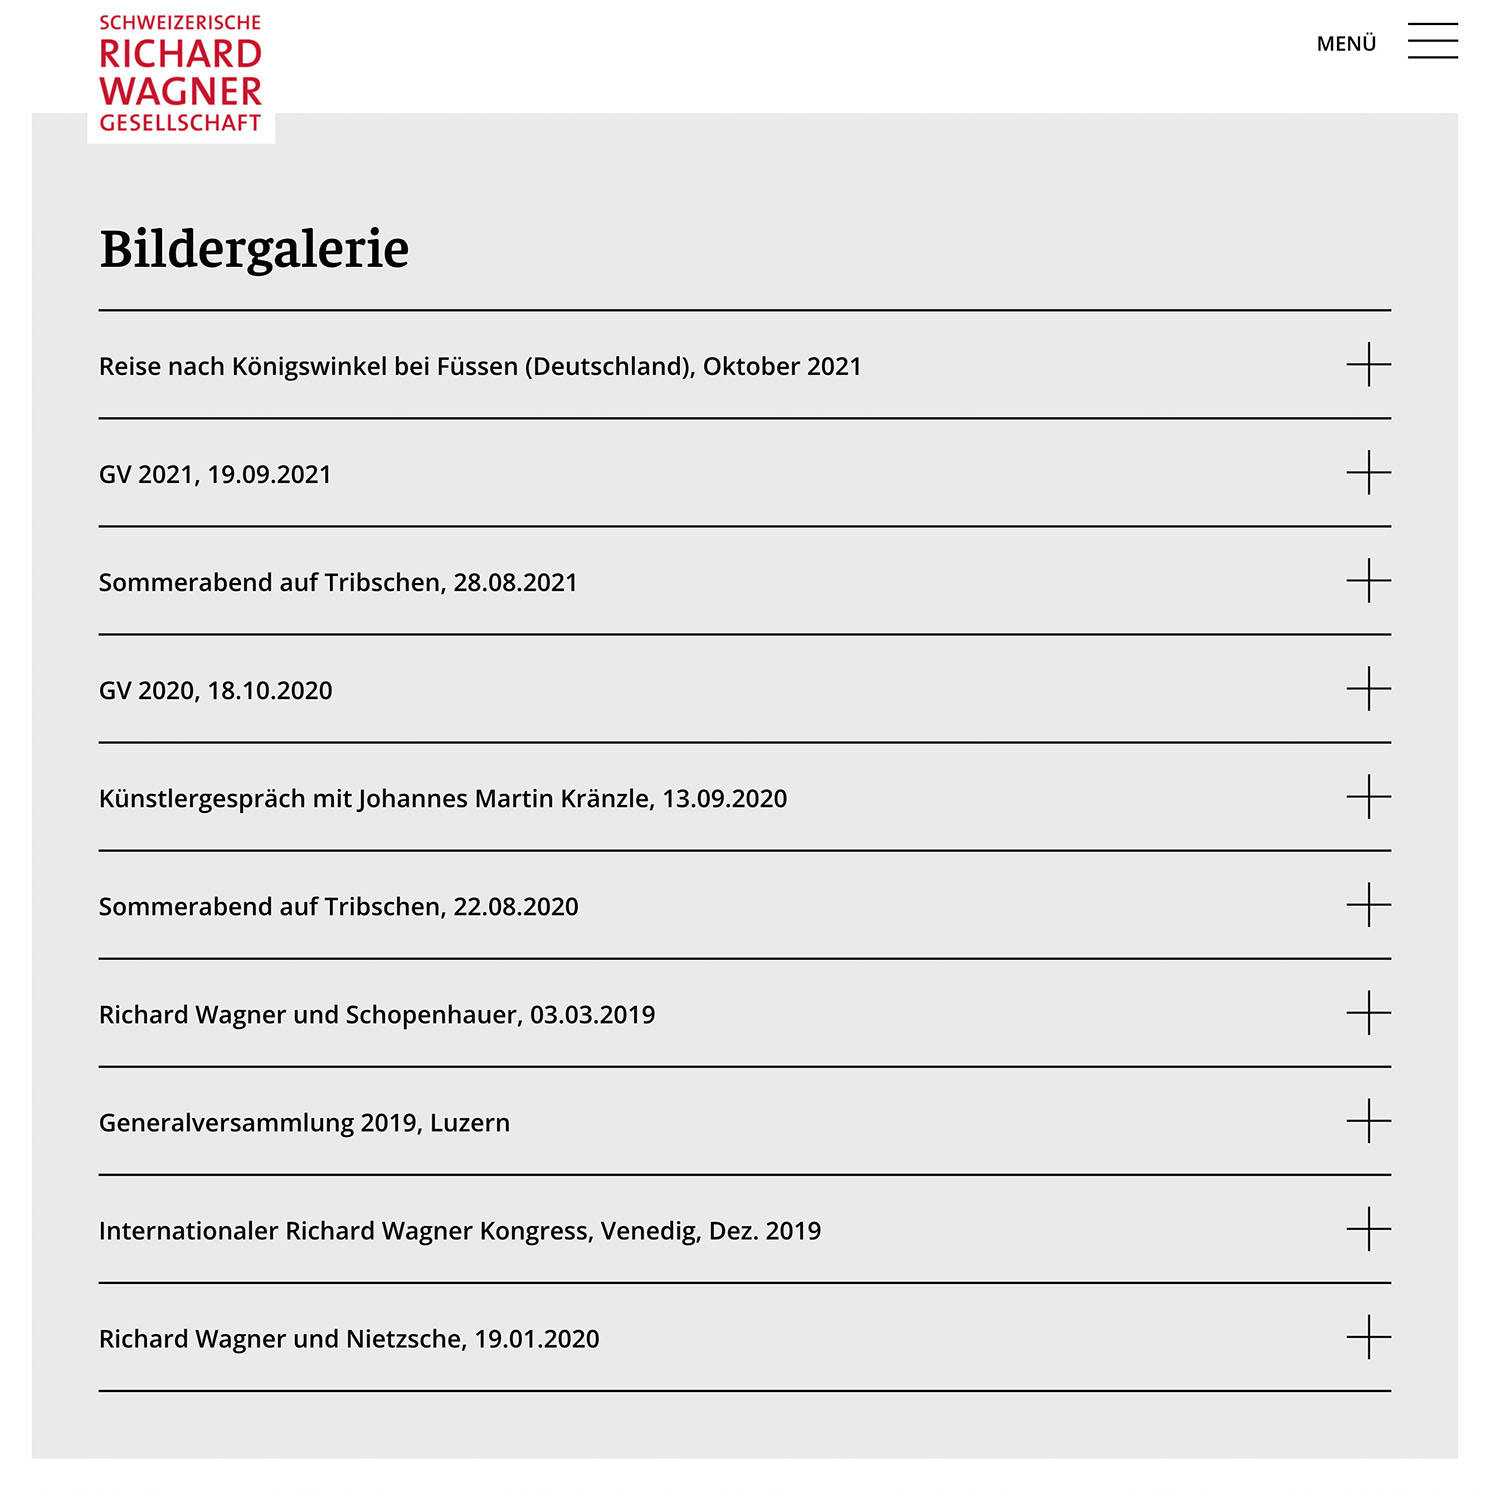 Schweizerische Richard Wagner-Gesellschaft (SRWG) Website Bildergalerie